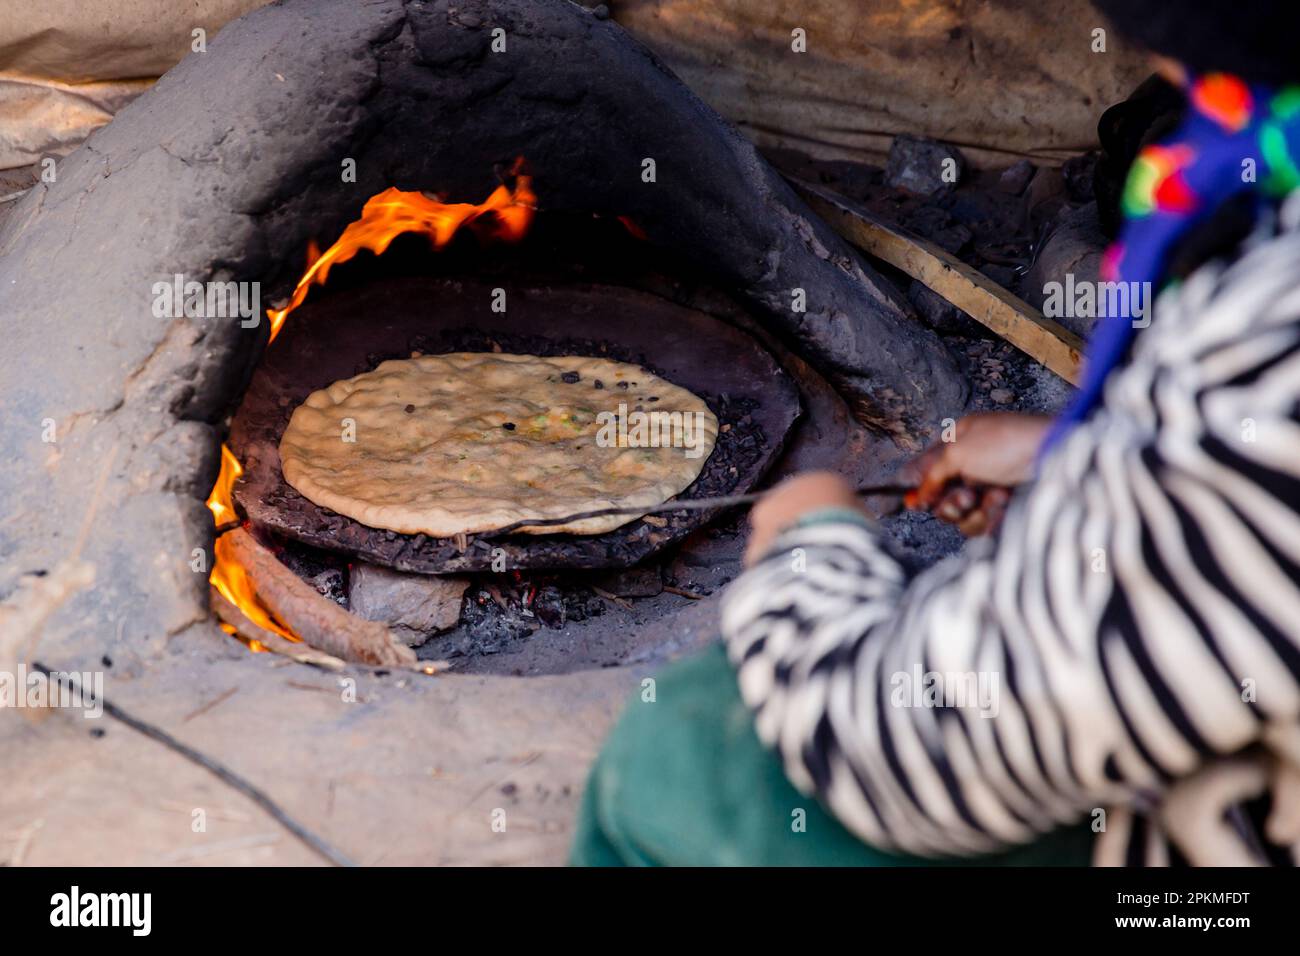 Une femme marocaine prépare une pizza berbère dans un four à bois Banque D'Images